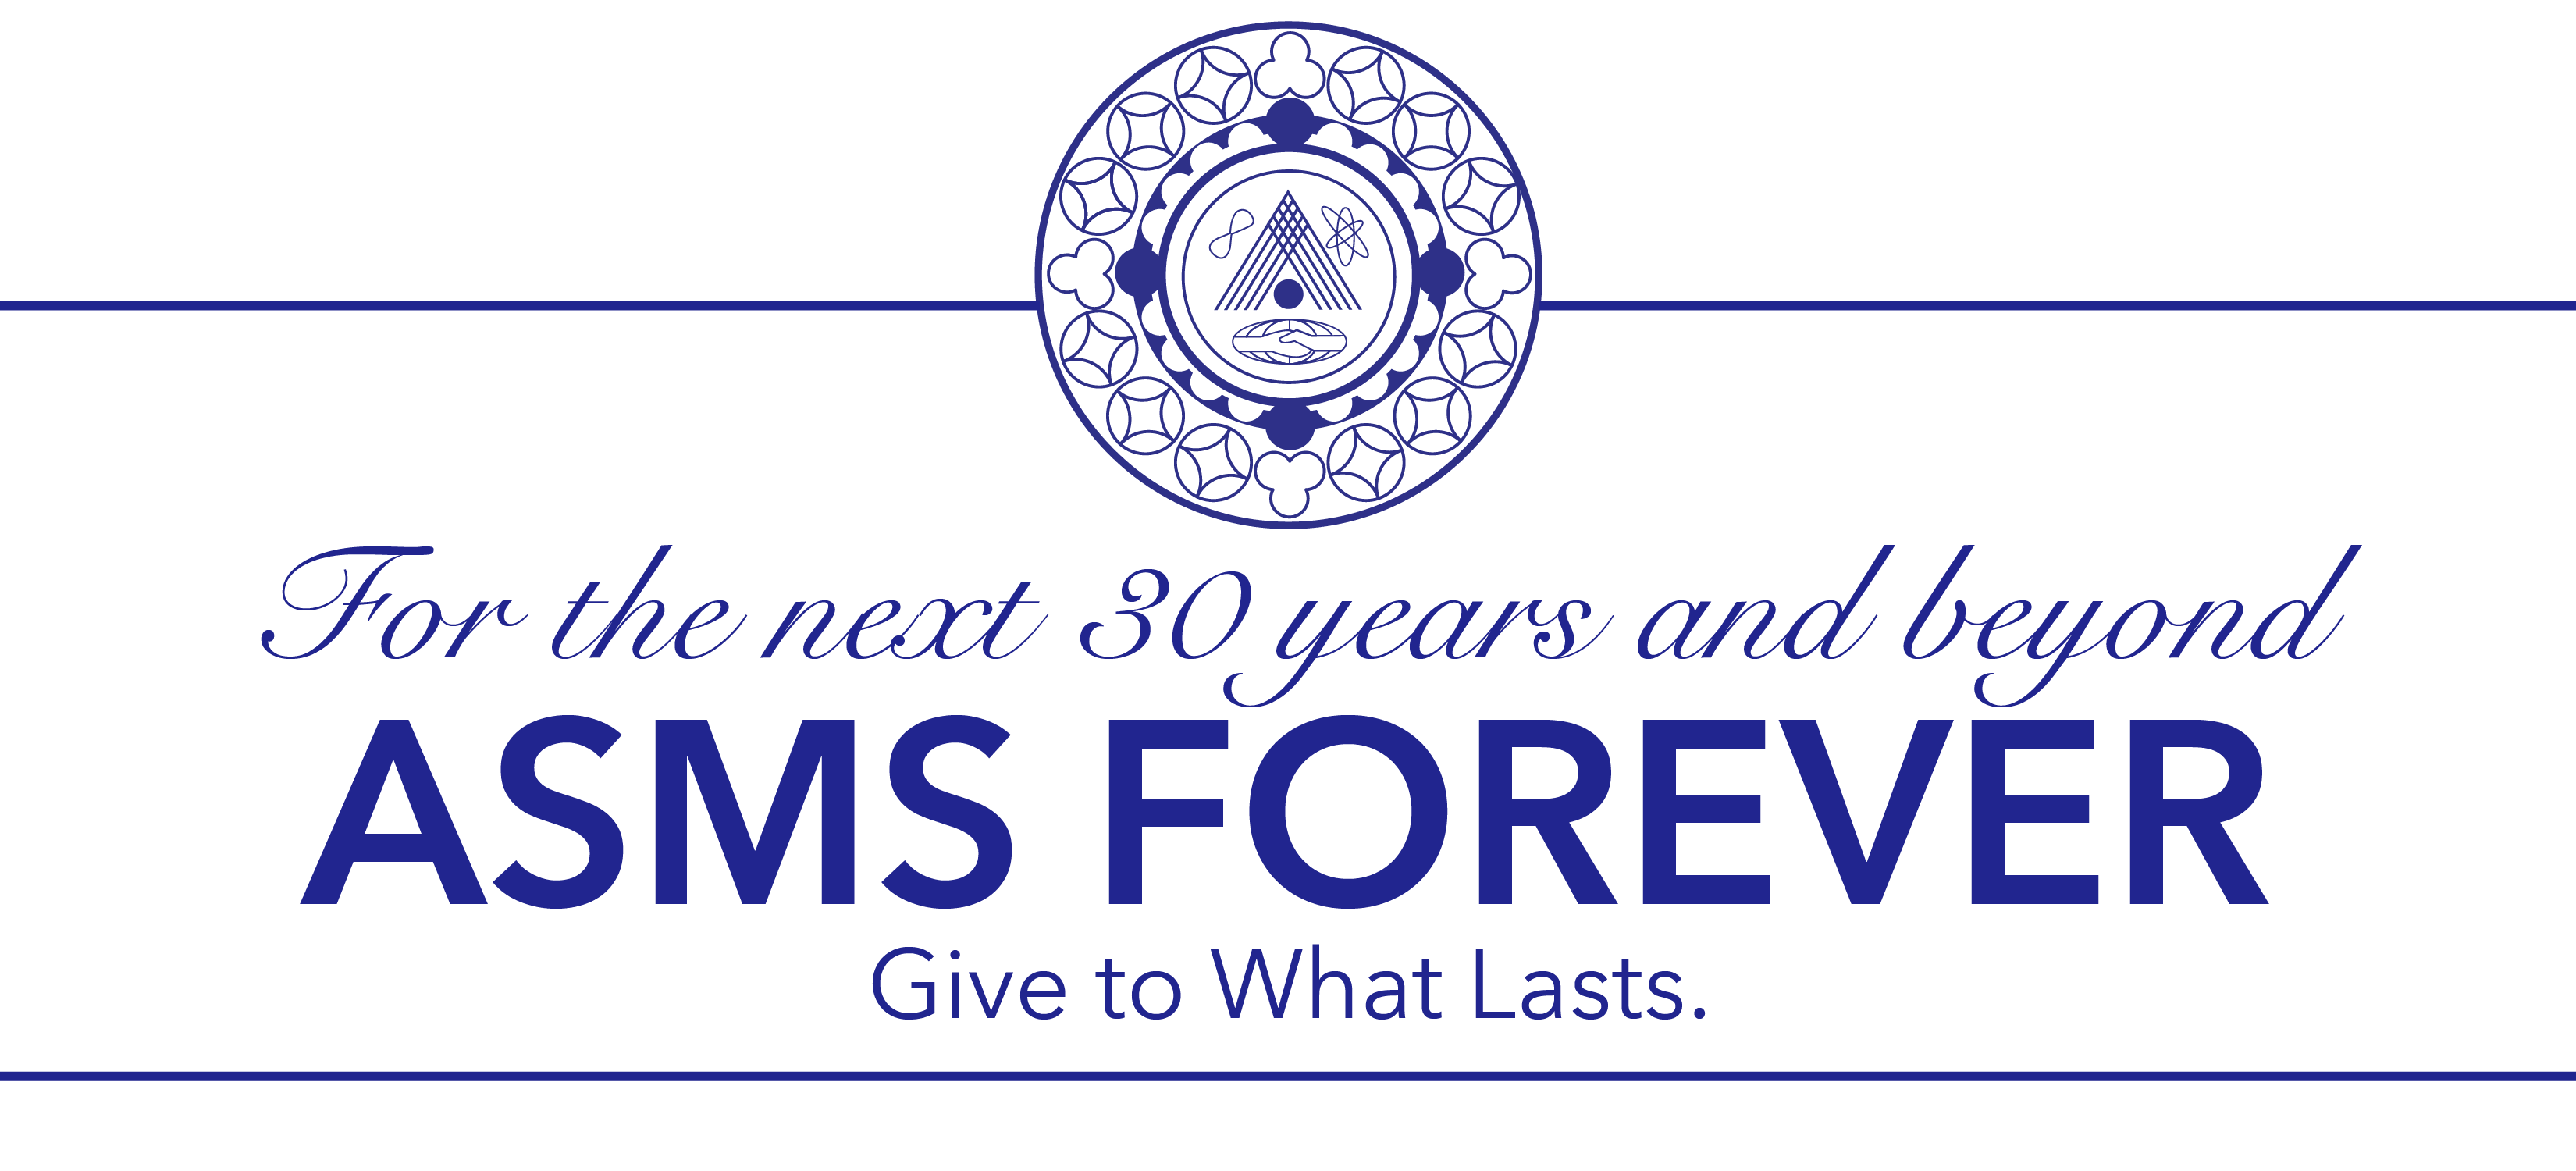 ASMS Forever Headers2